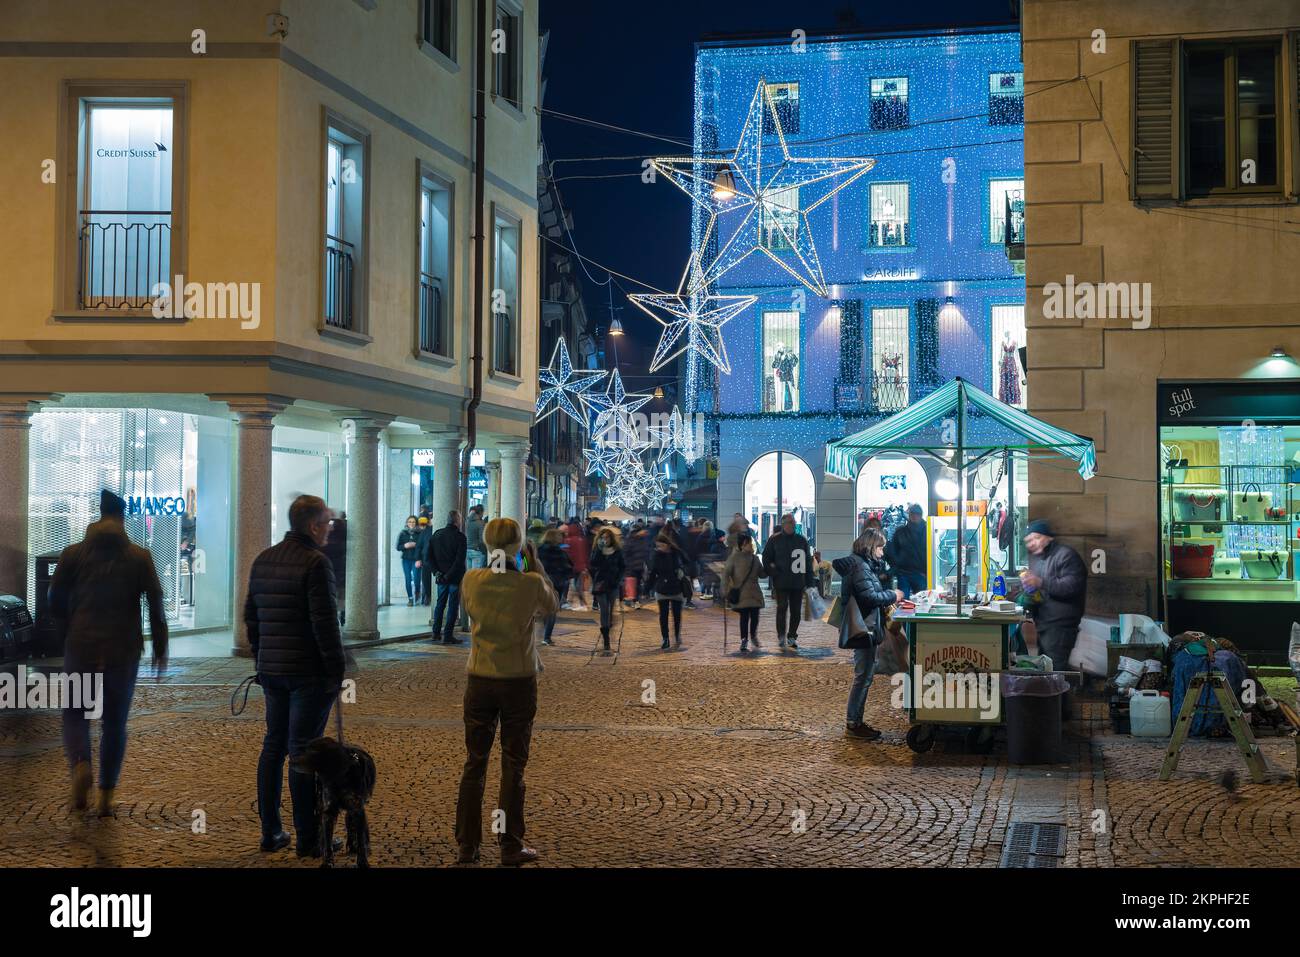 Strada di notte illuminata con decorazioni natalizie, Varese, Italia Foto Stock